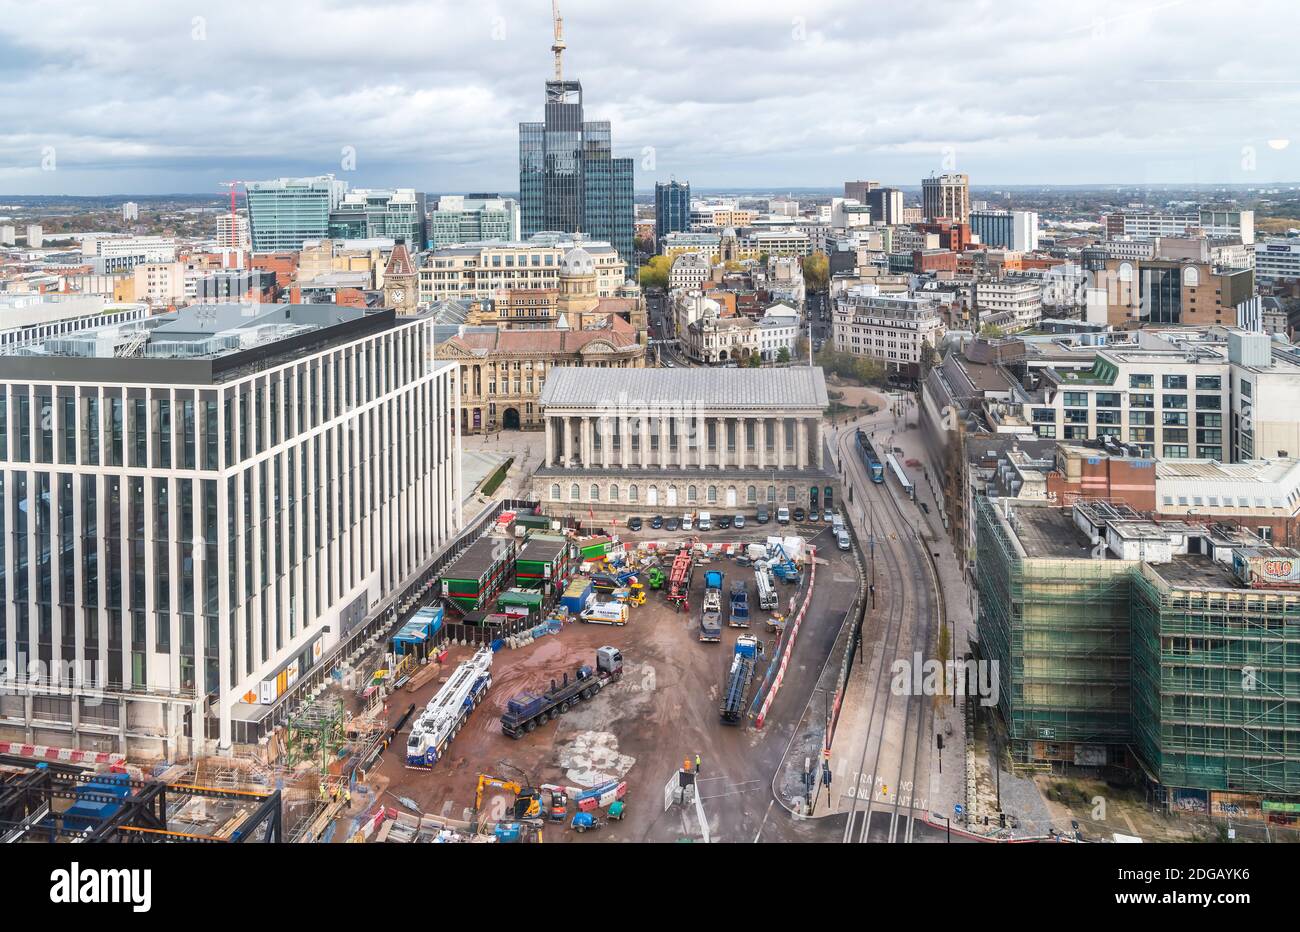 Una vista aérea del centro de la ciudad de Birmingham con vistas al lugar de construcción en la urbanización Paradise, también visible es el Ayuntamiento. Foto de stock